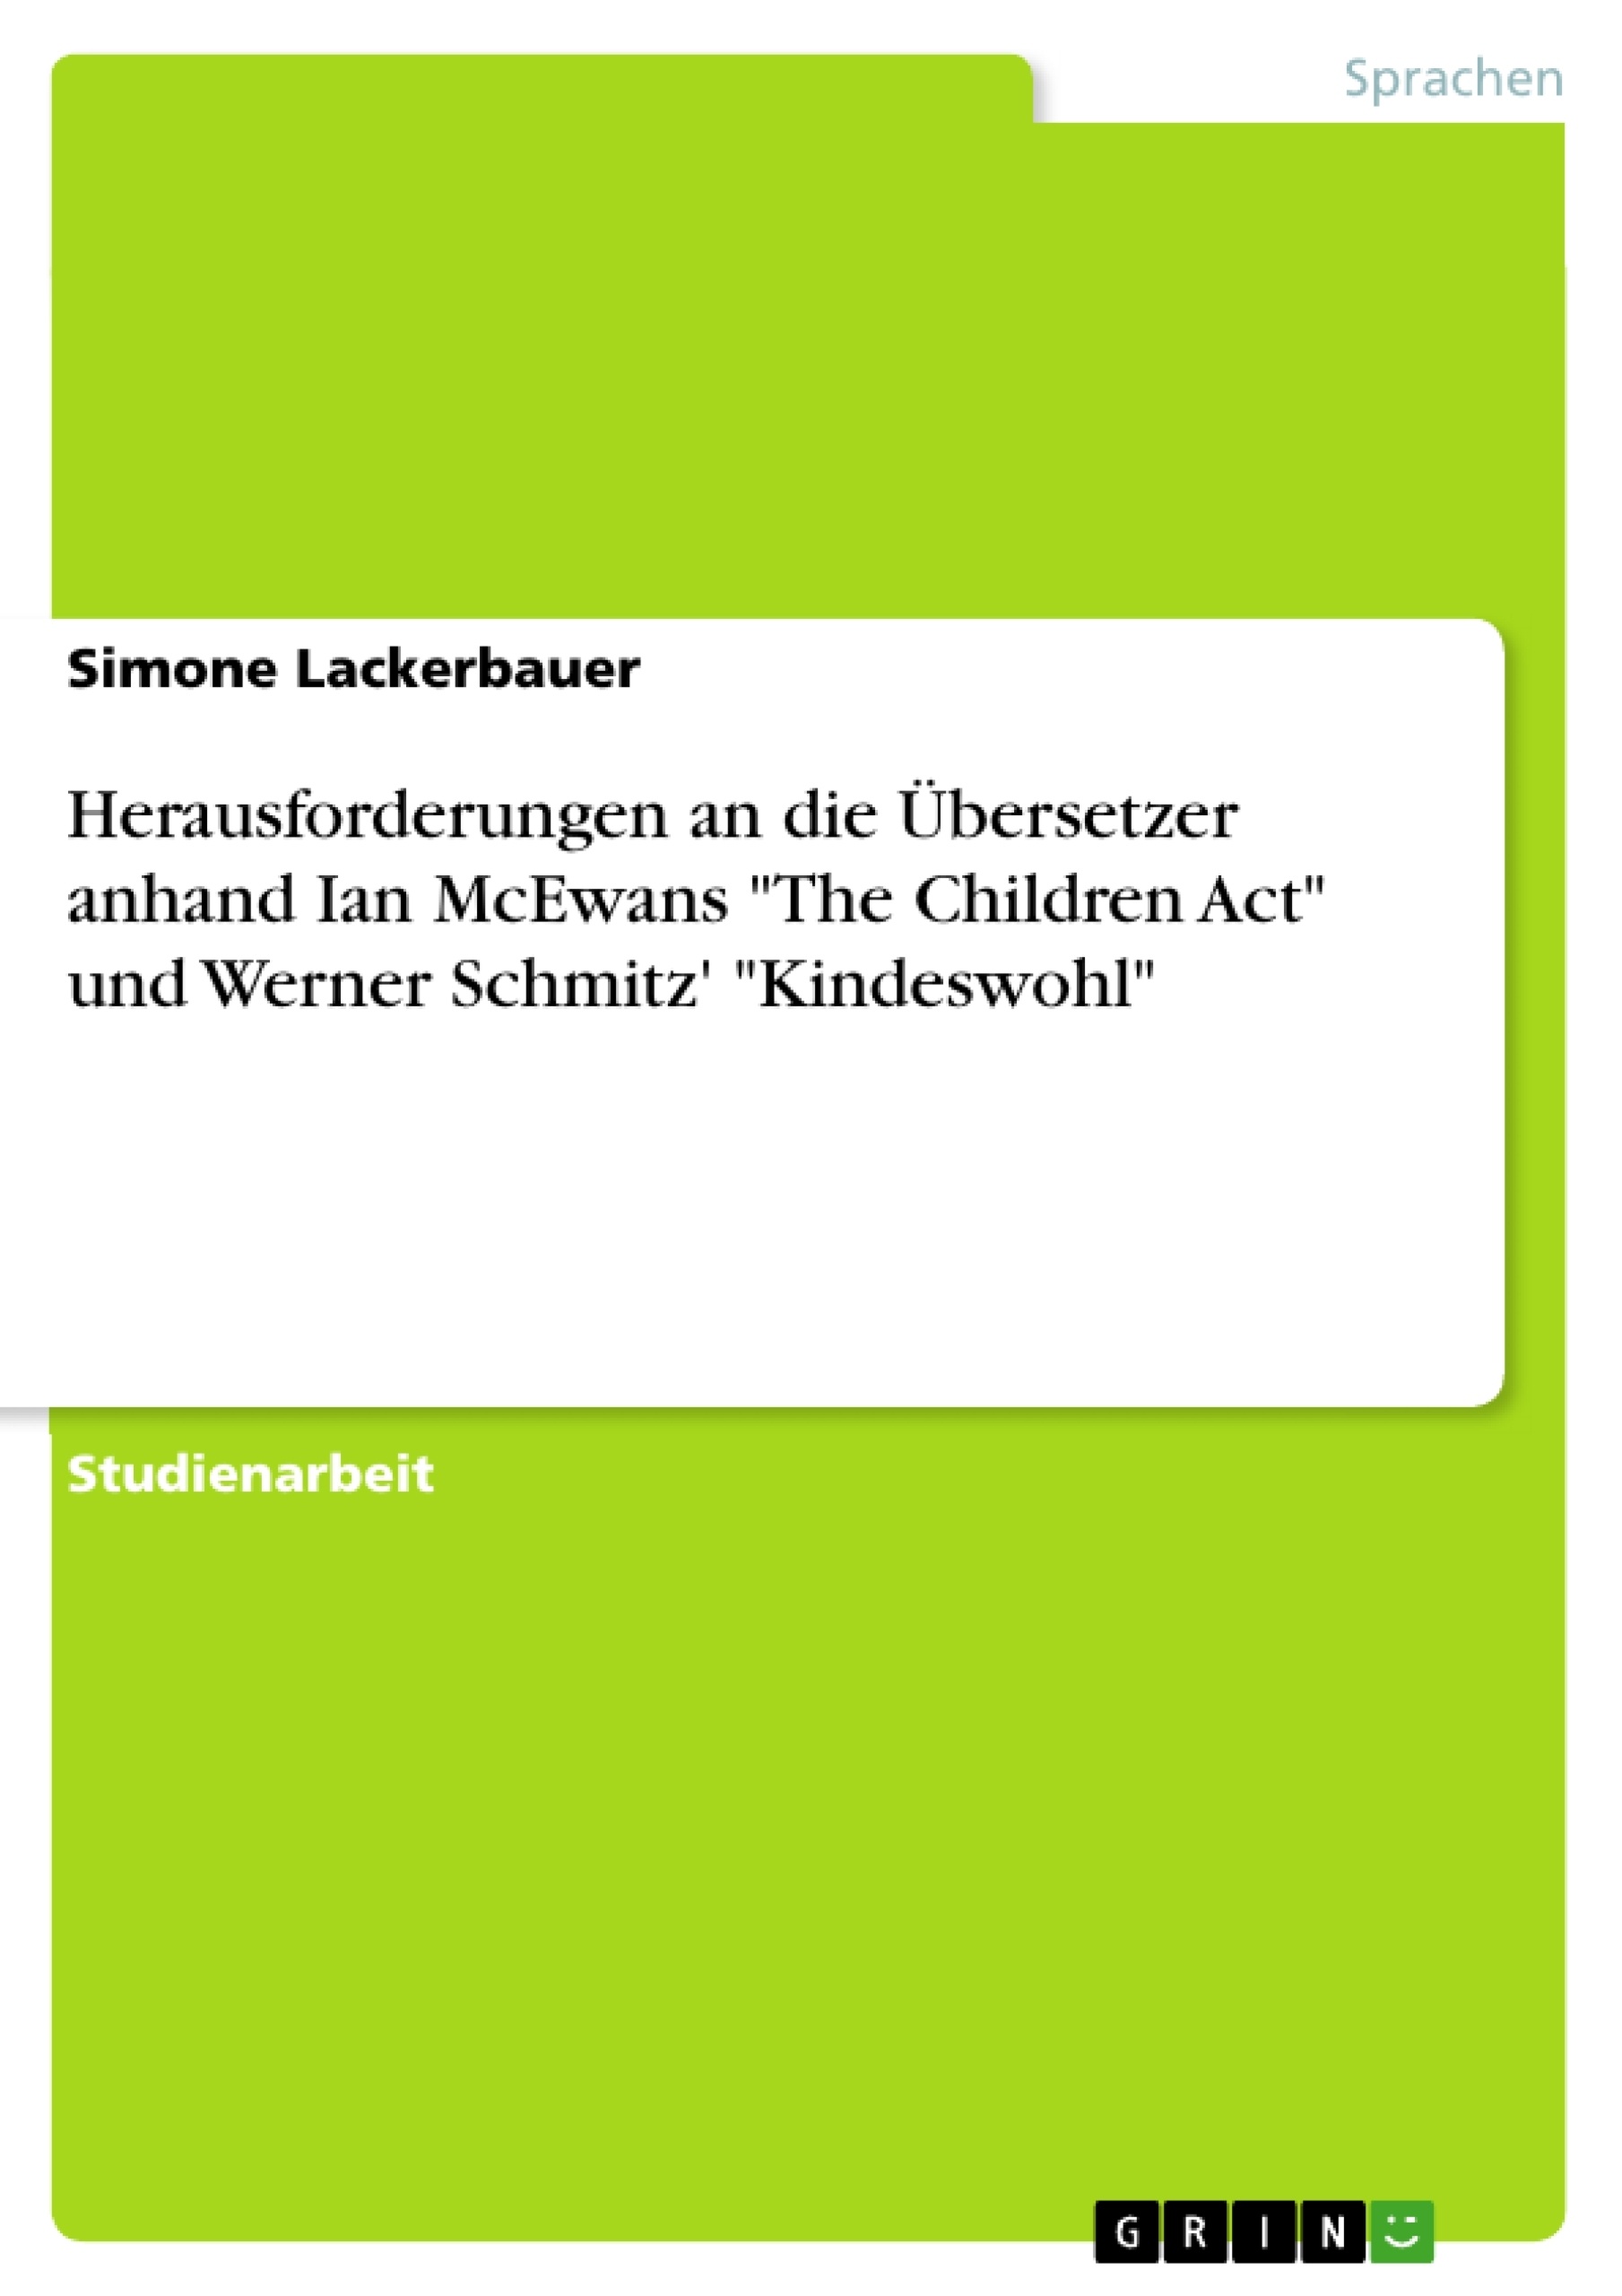 Titre: Herausforderungen an die Übersetzer anhand Ian McEwans "The Children Act" und Werner Schmitz' "Kindeswohl"